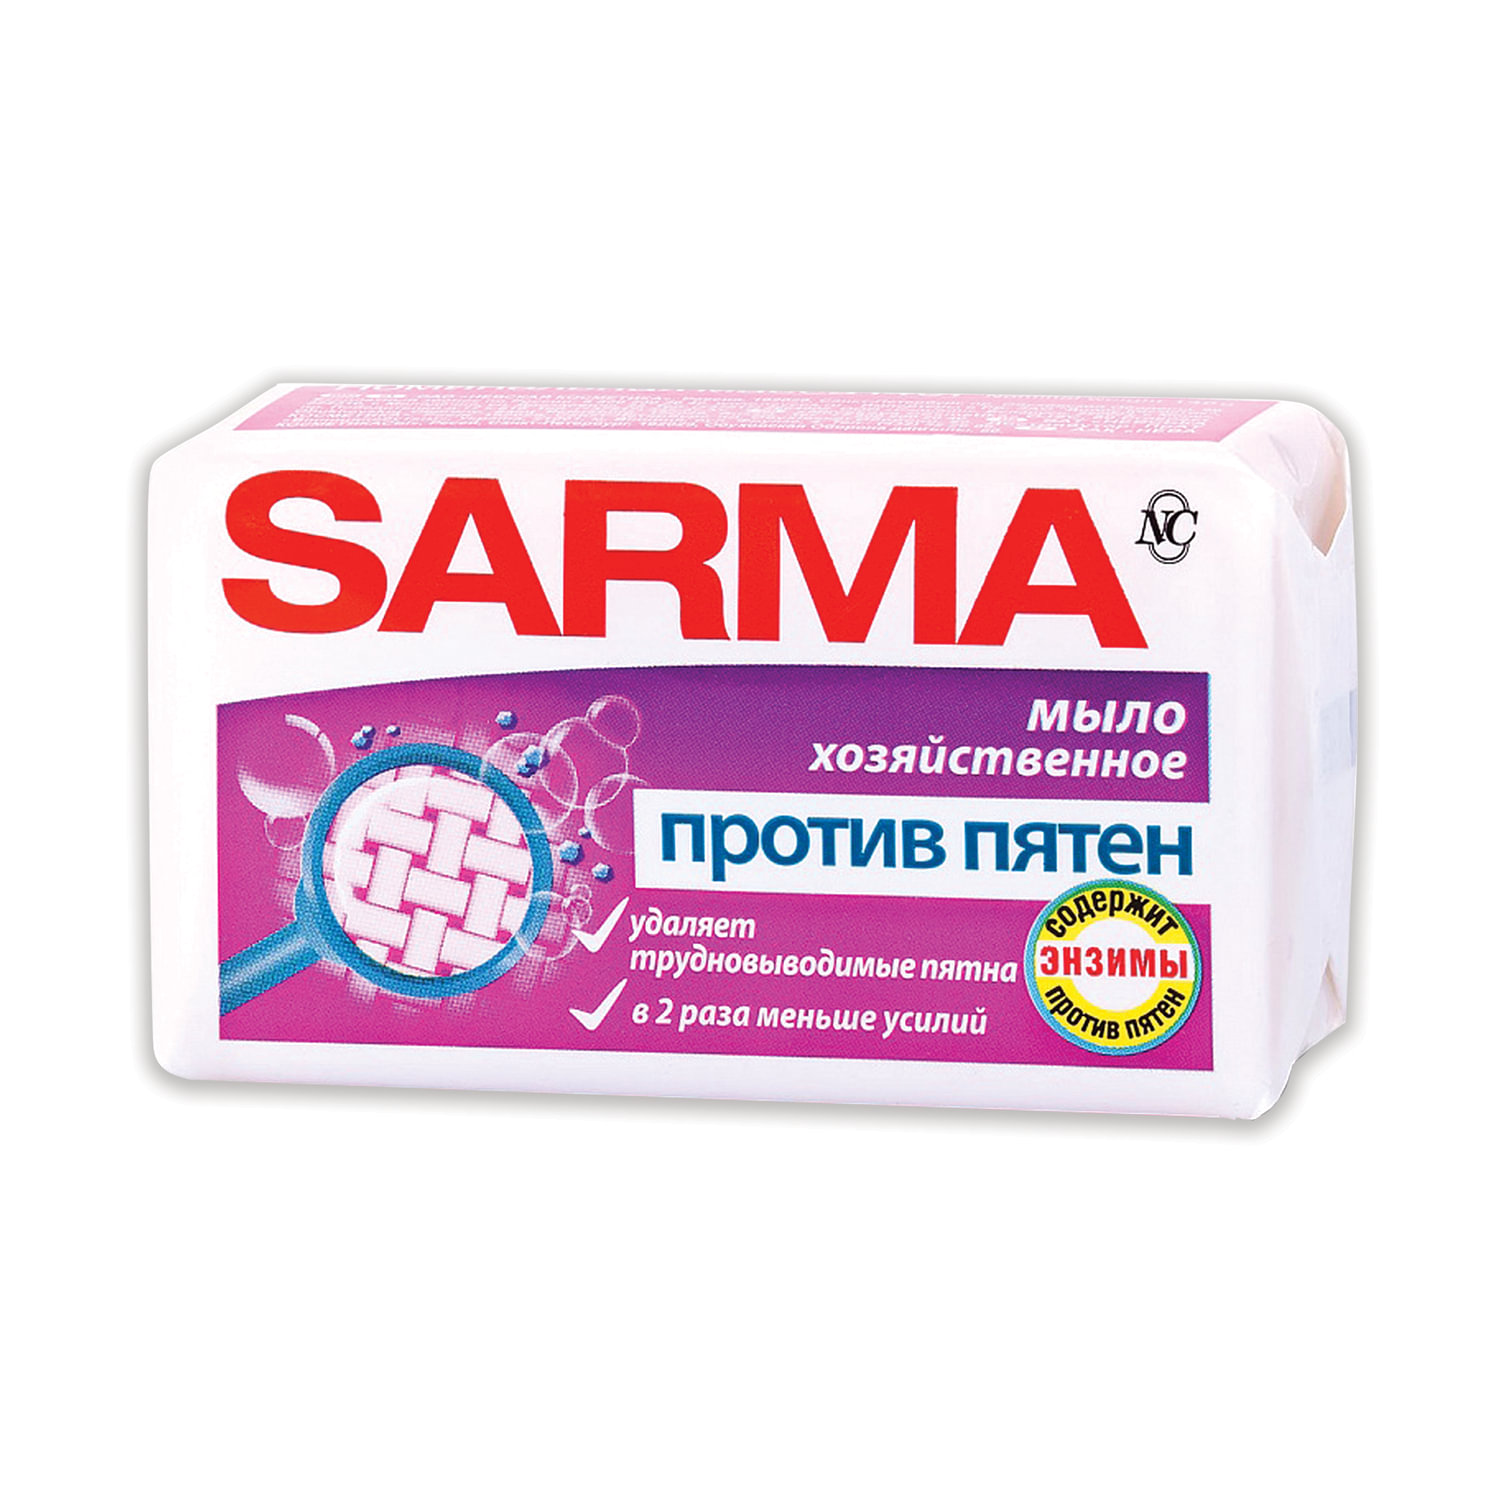  SARMA 11150